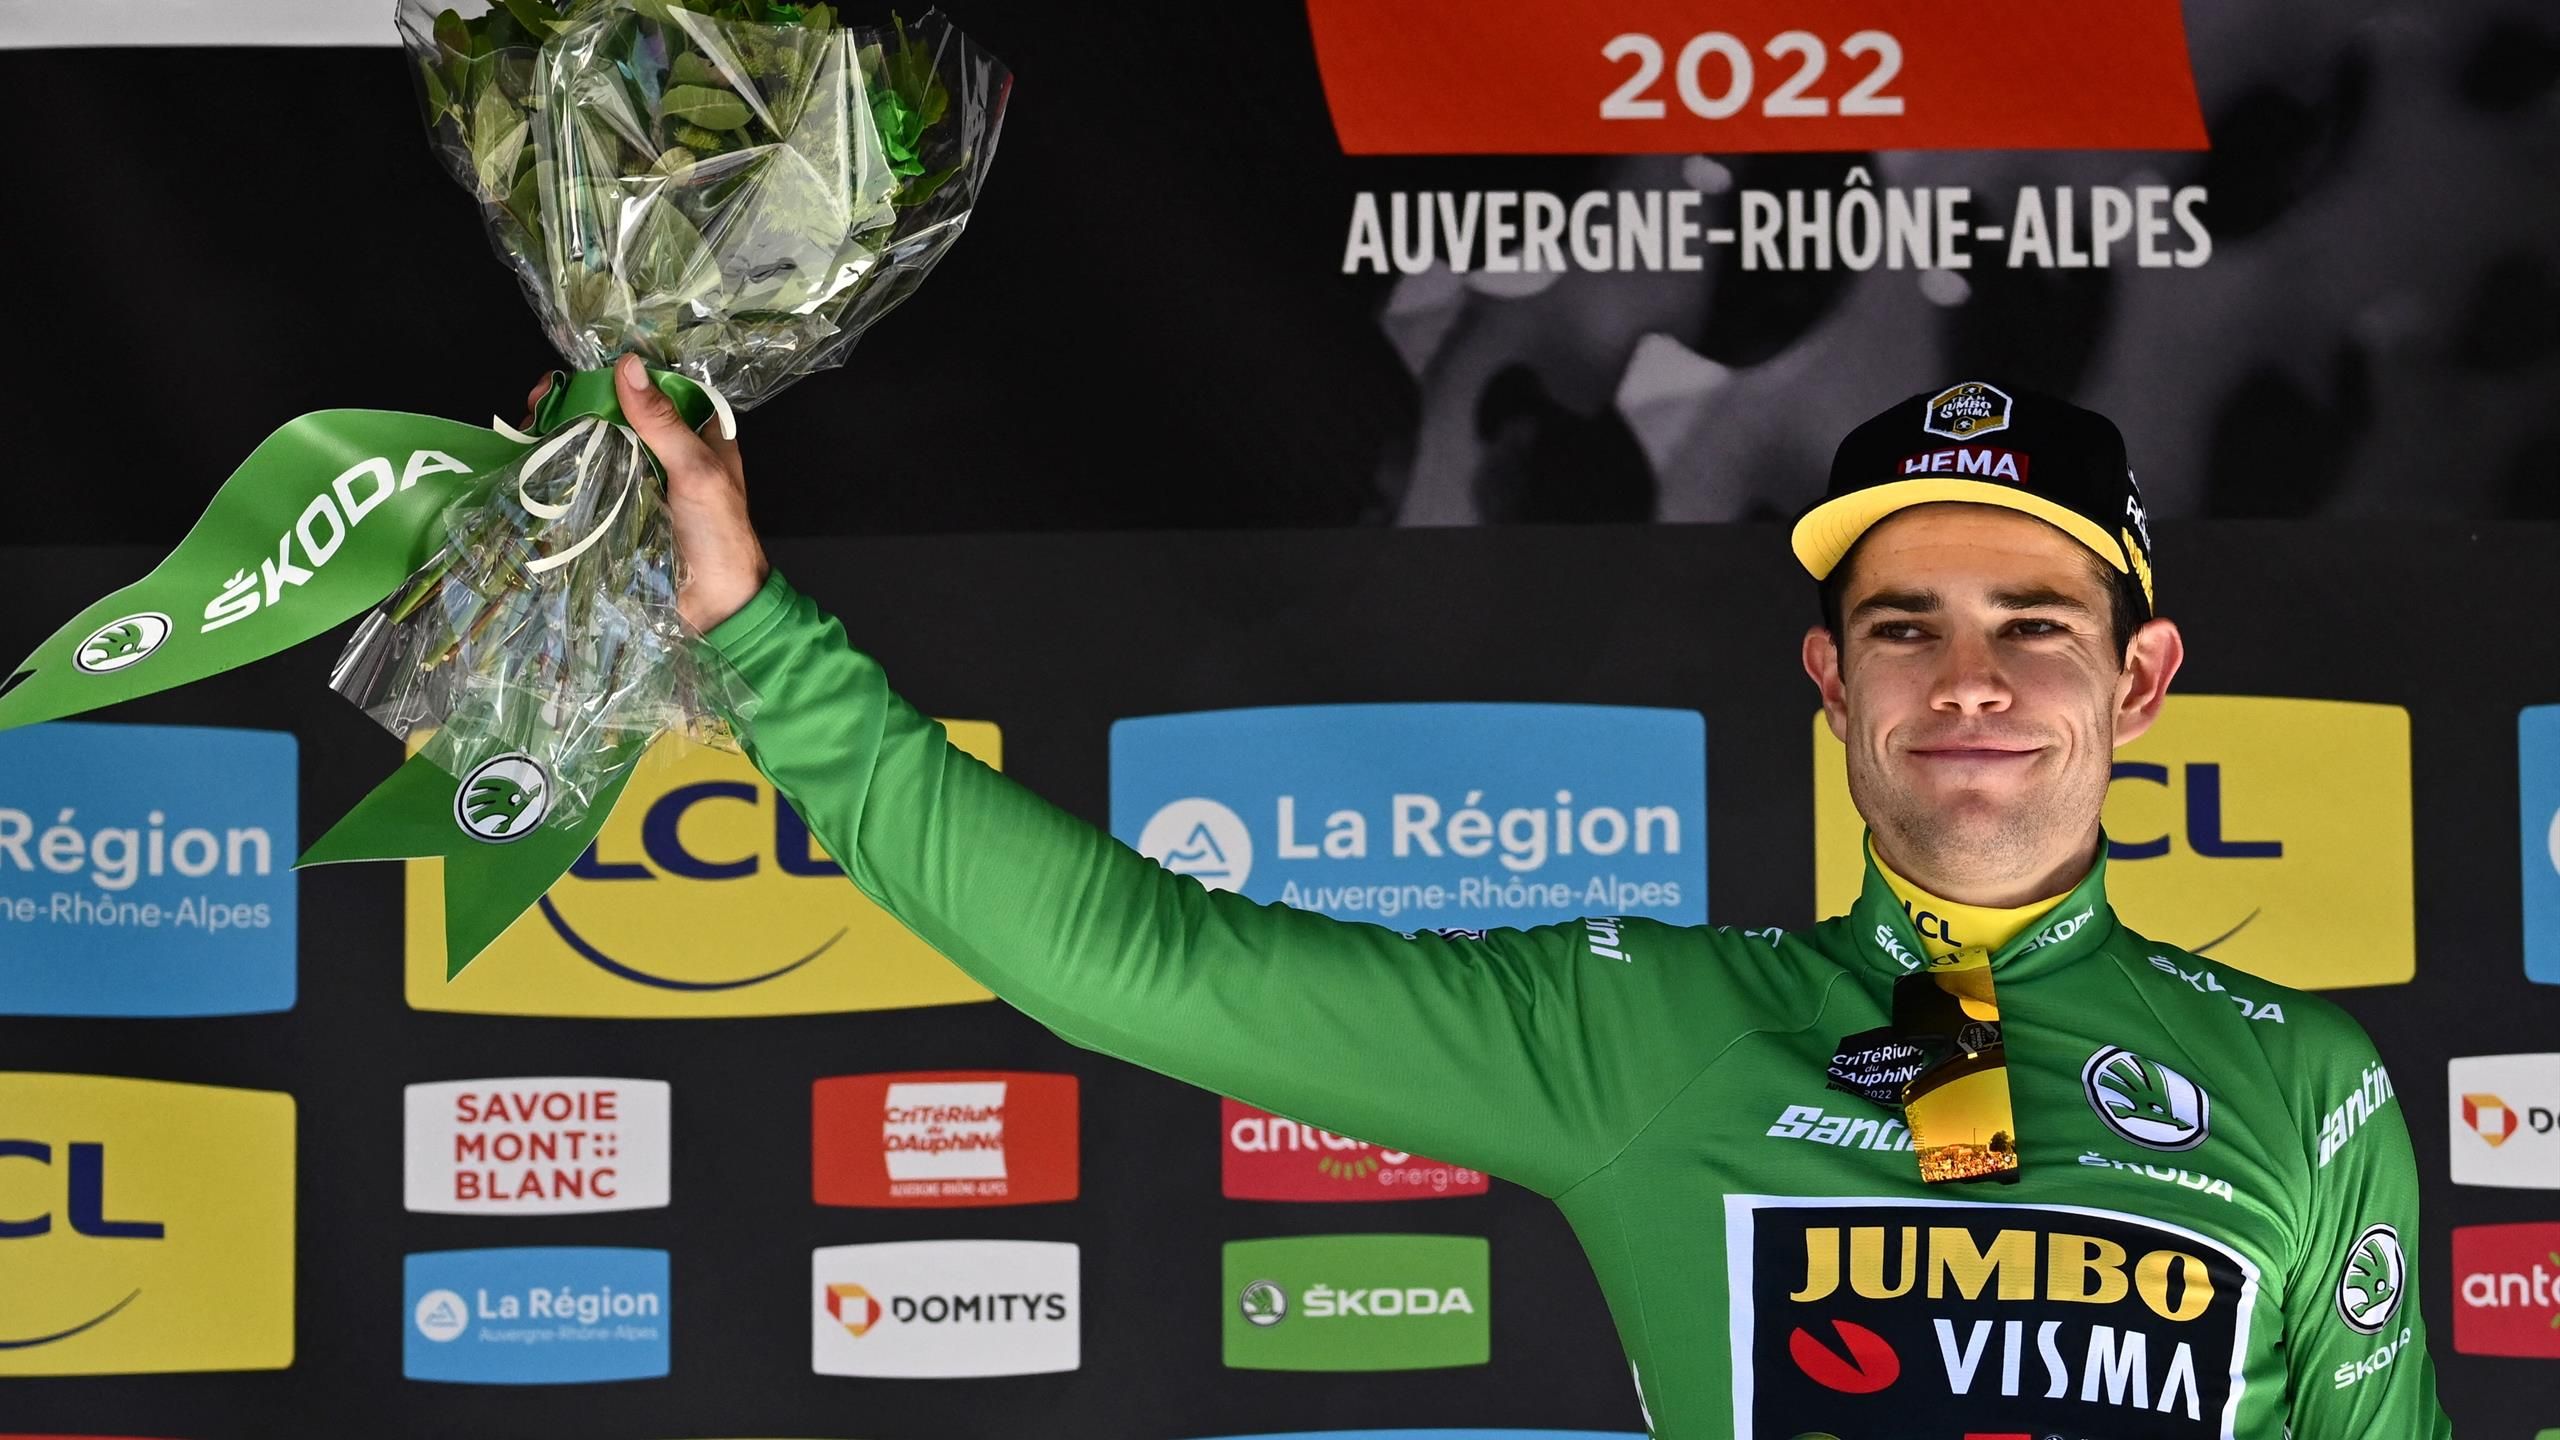 Steil Gelukkig Belonend Tour de France 2022 – Green jersey and polka dot jersey guide: Wout van  Aert & Ruben Guerreiro favourites? - Eurosport